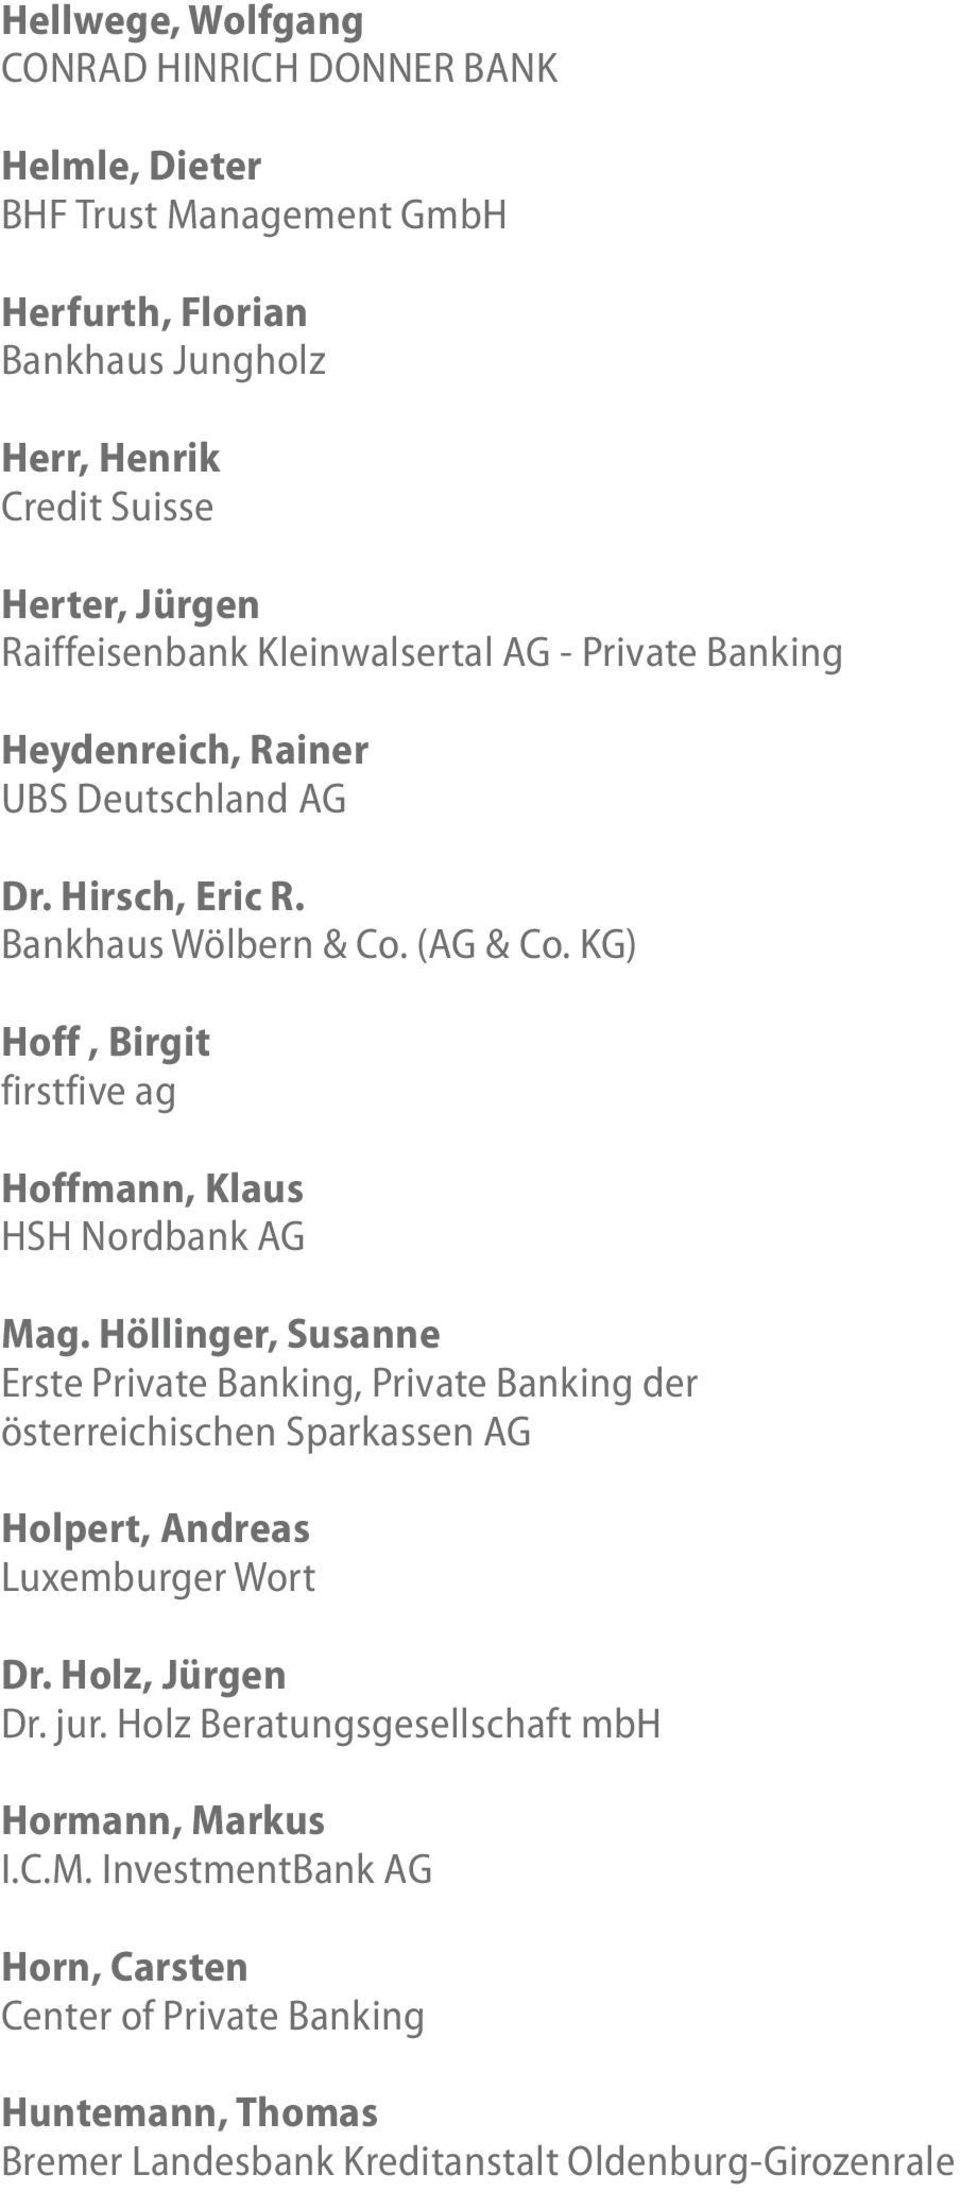 KG) Hoff, Birgit firstfive ag Hoffmann, Klaus HSH Nordbank AG Mag.